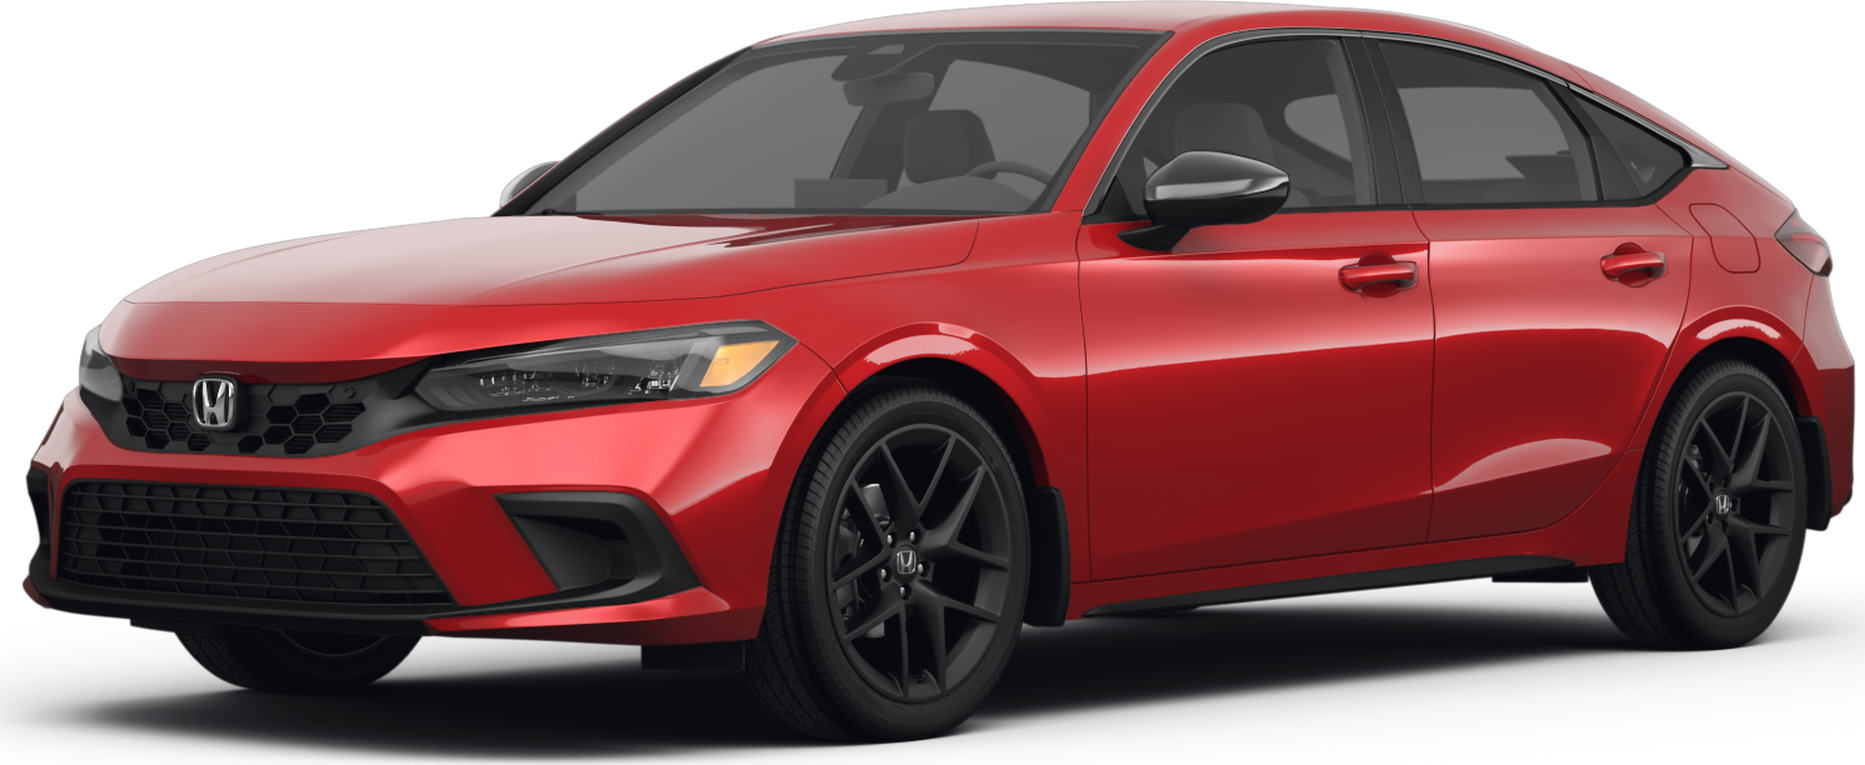 2022 Honda Civic Price, Value, Ratings & Reviews